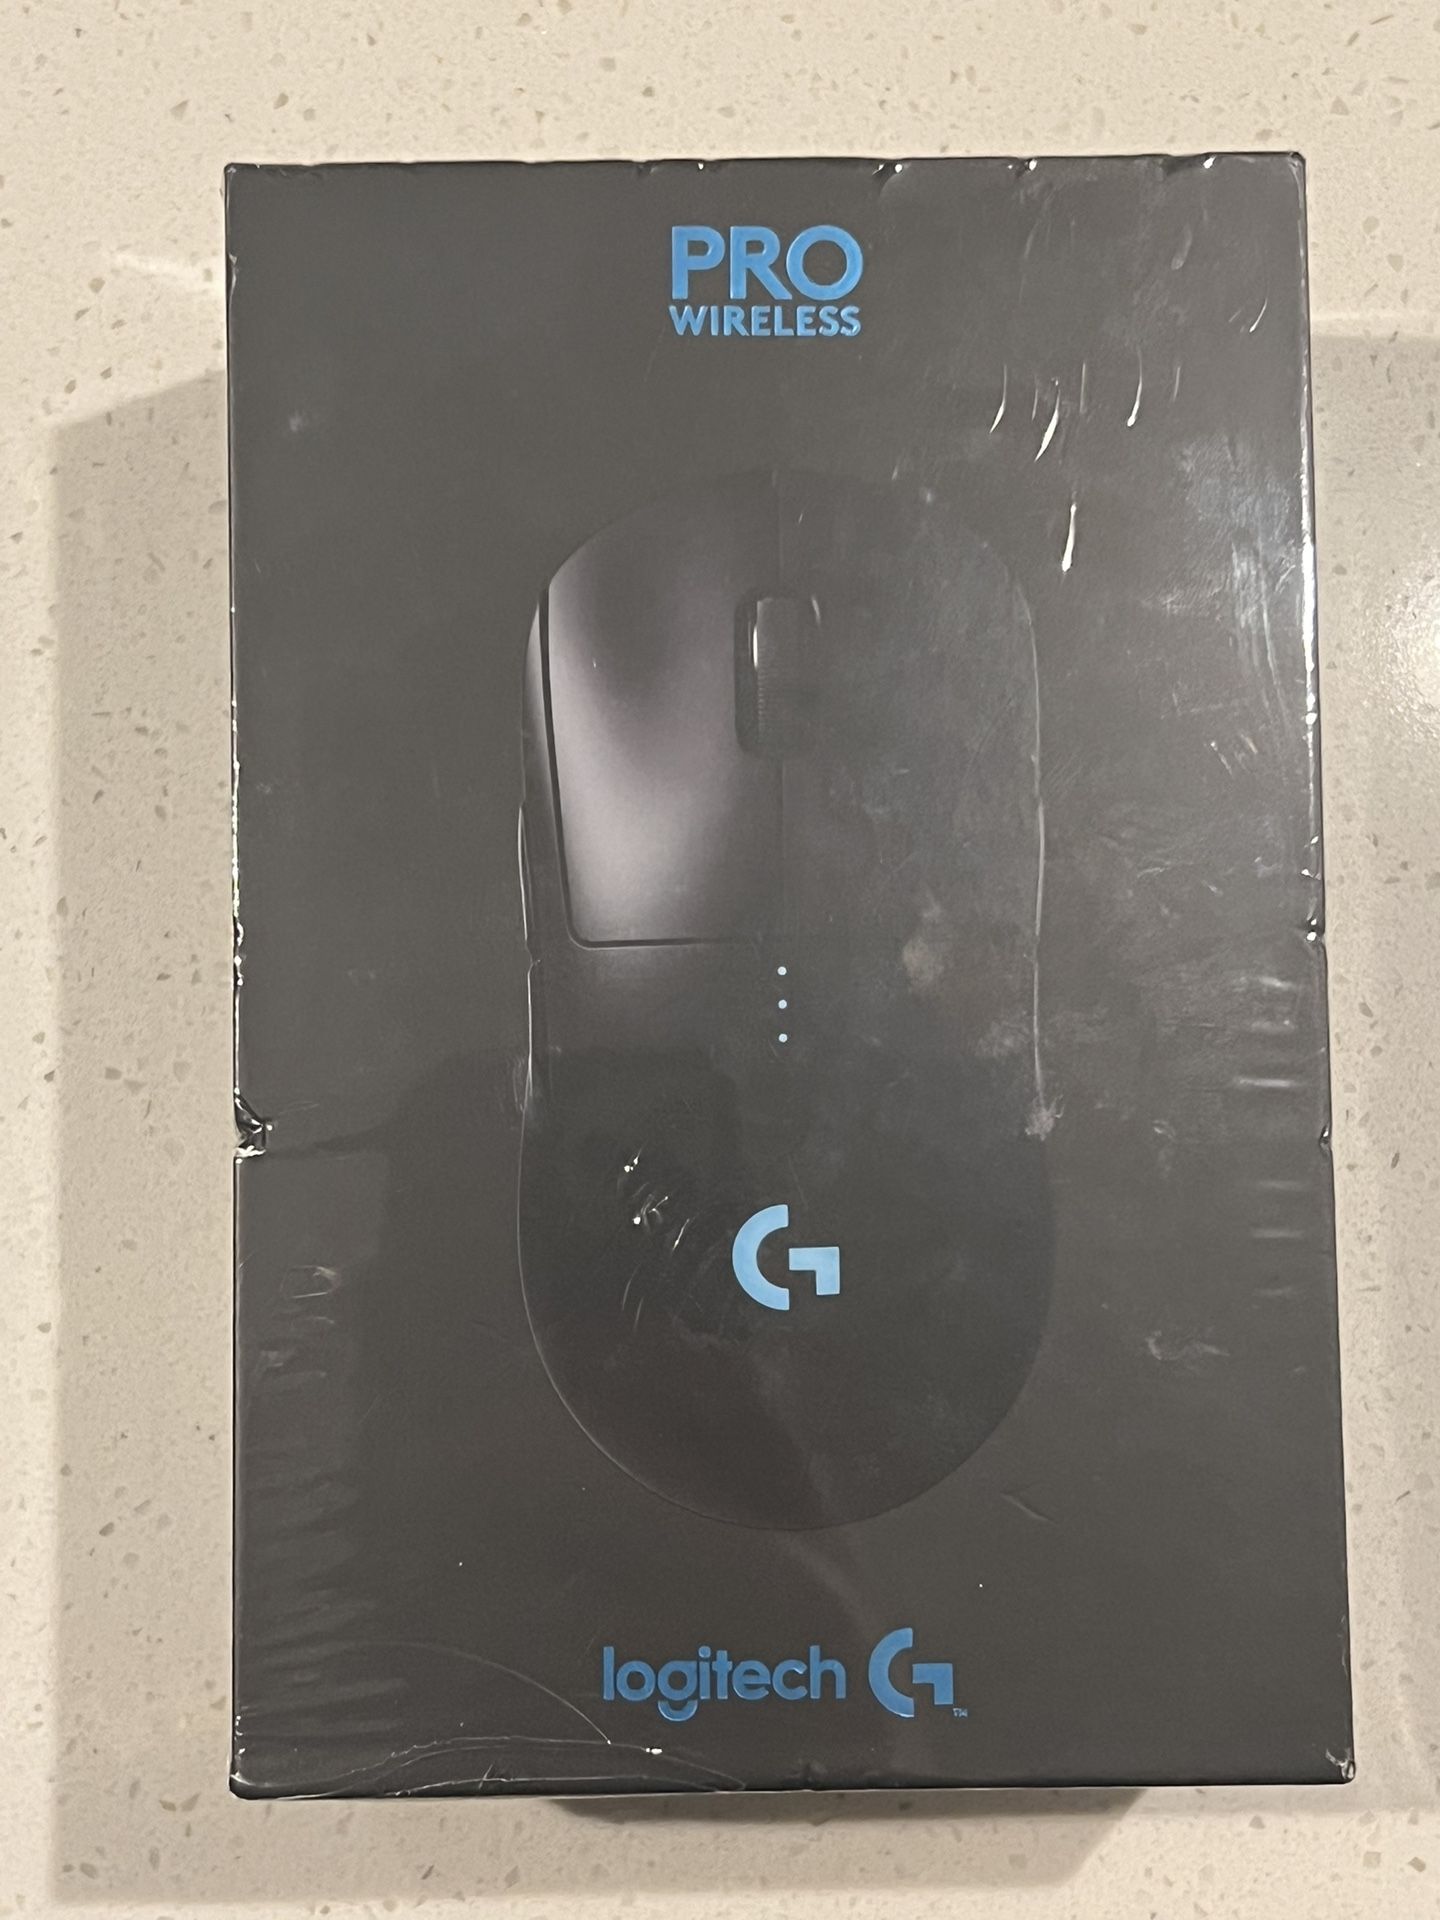 New Logitech Pro Wireless Mouse